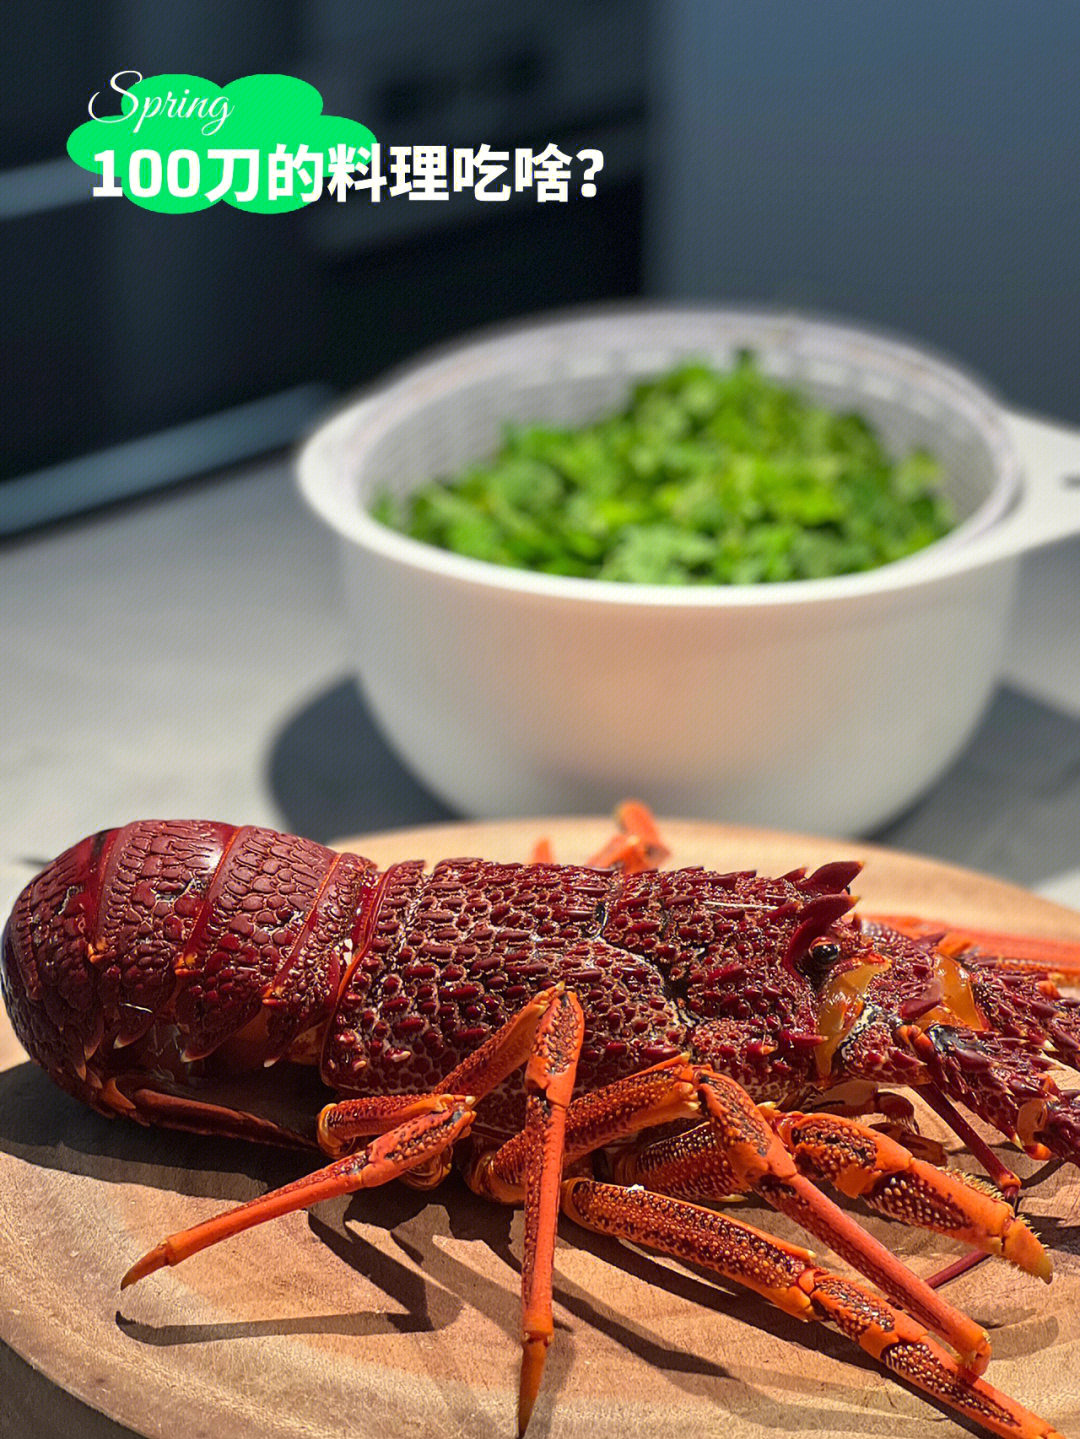 今日晚餐食材,购买于preston market11566南澳活龙虾(1公斤80刀)2